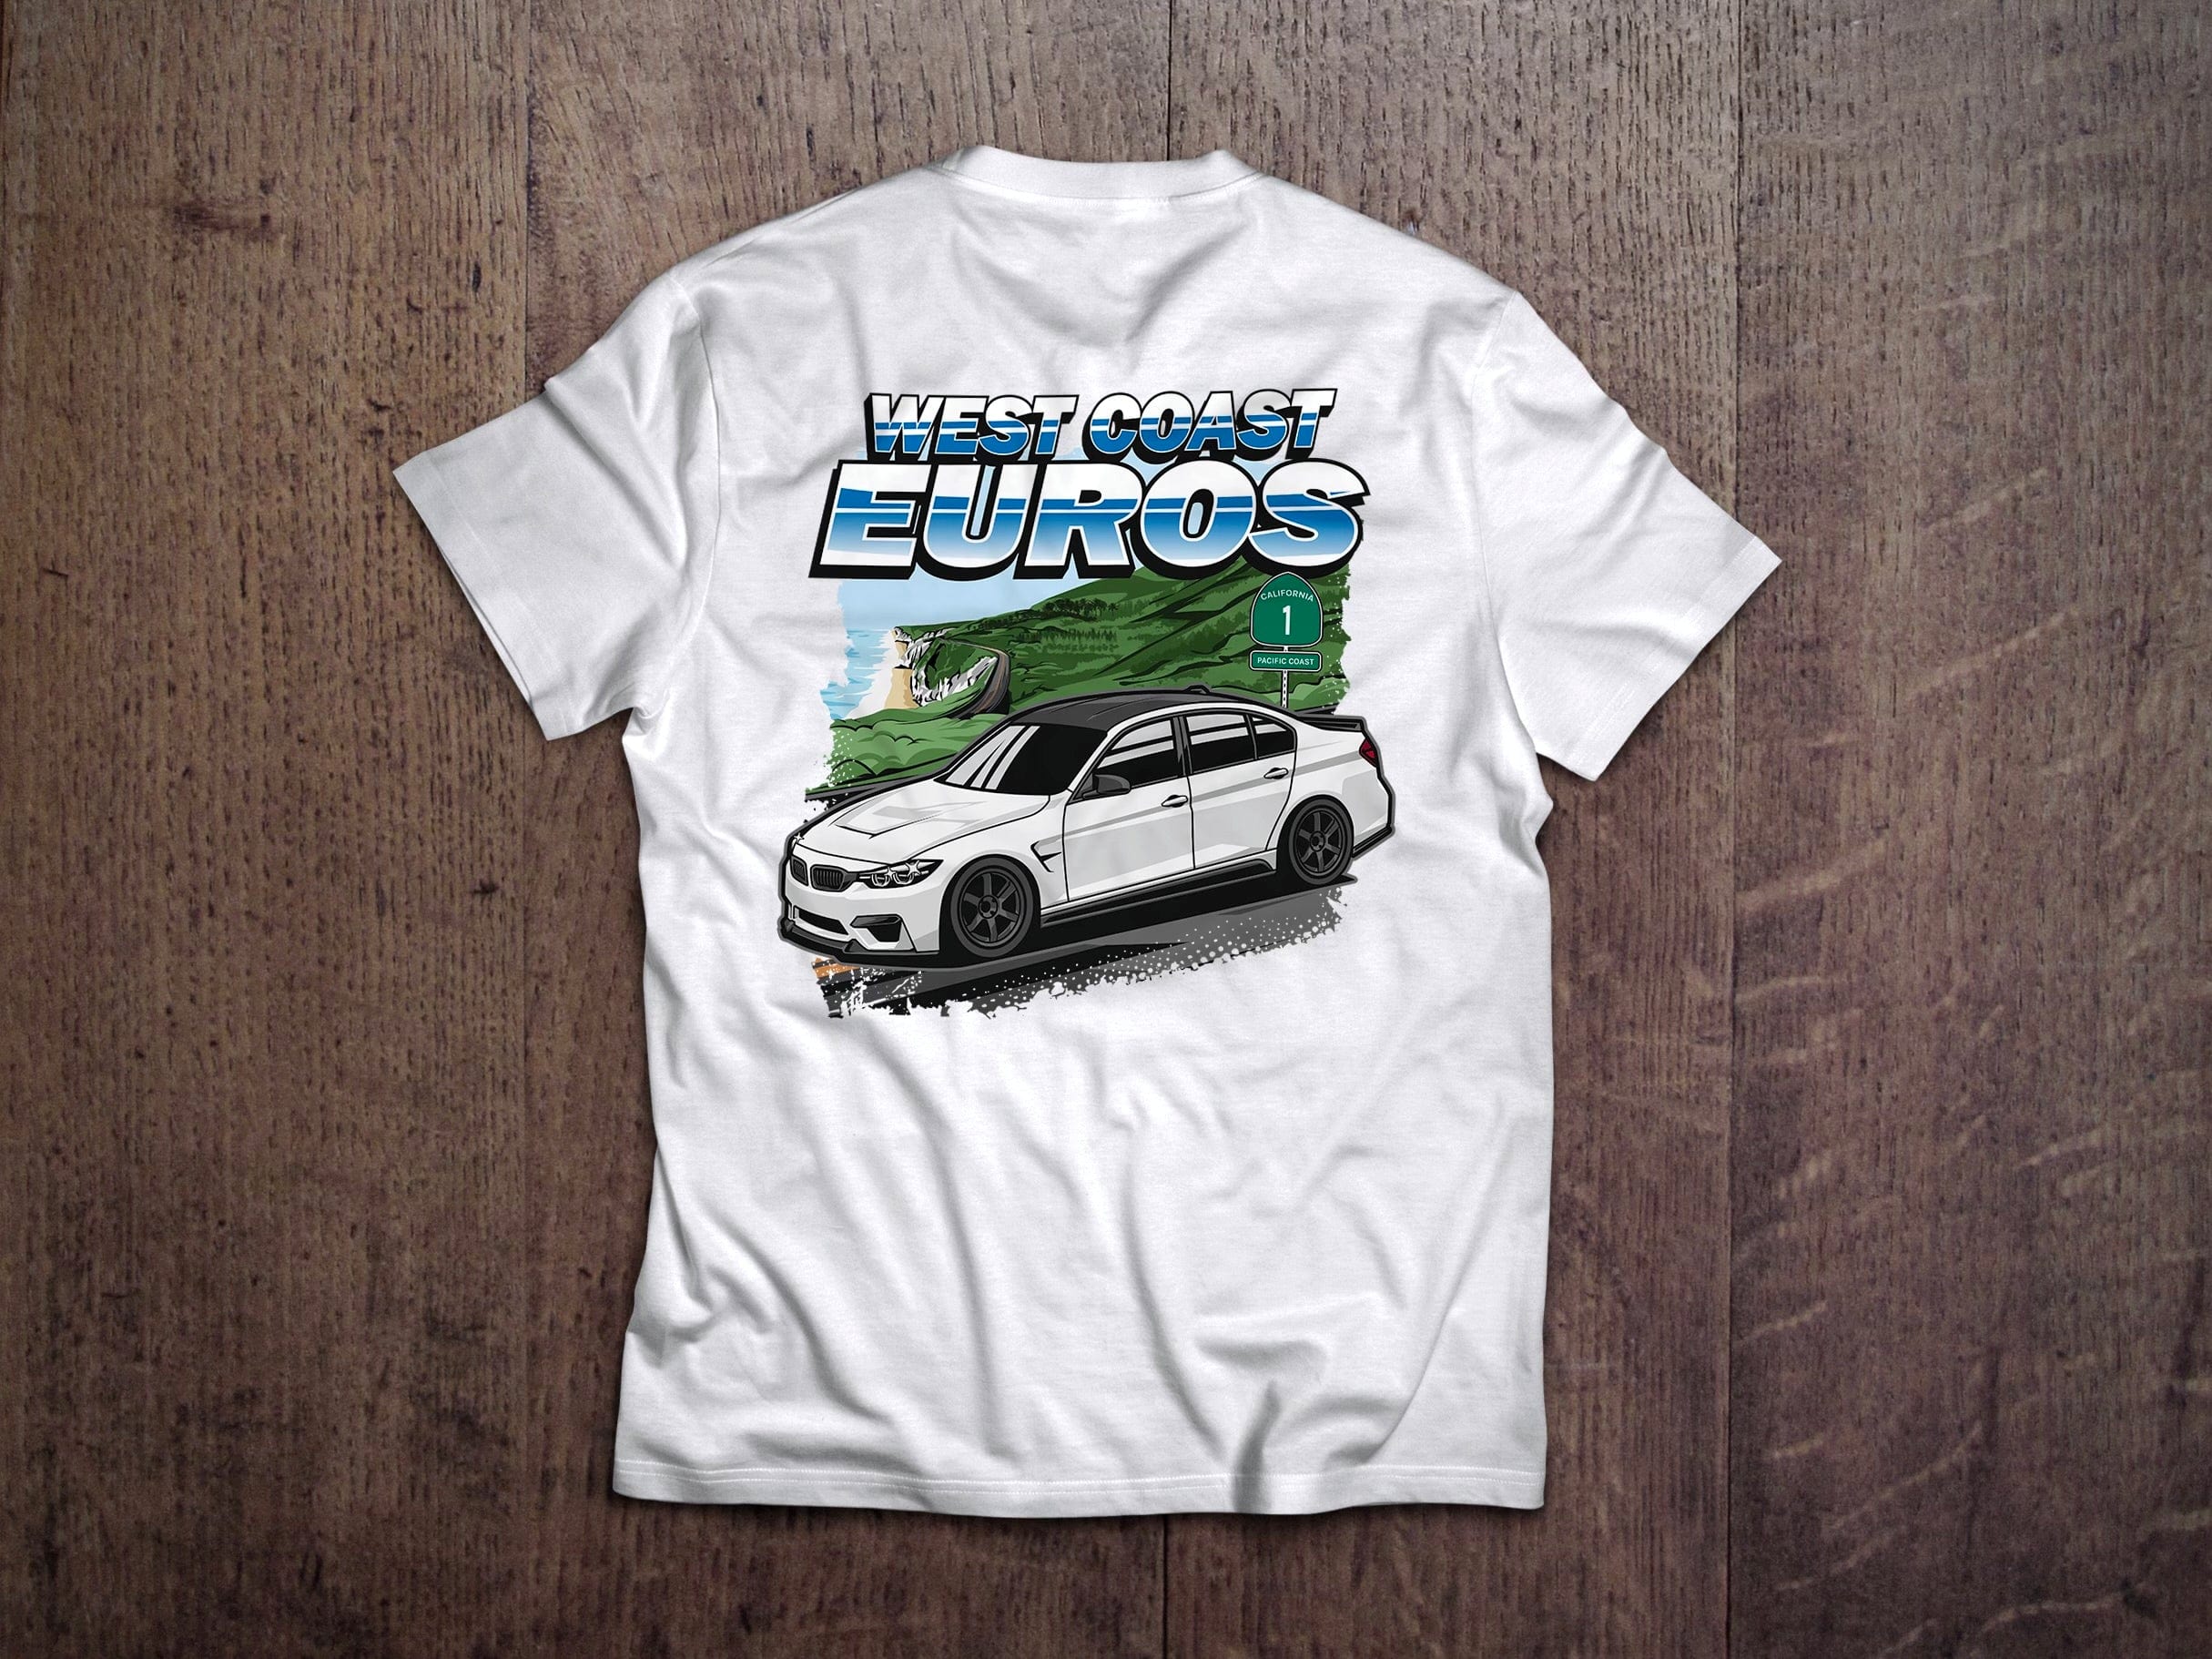 West Coast Euros Shirt BMW F80 "PCH" T-Shirt